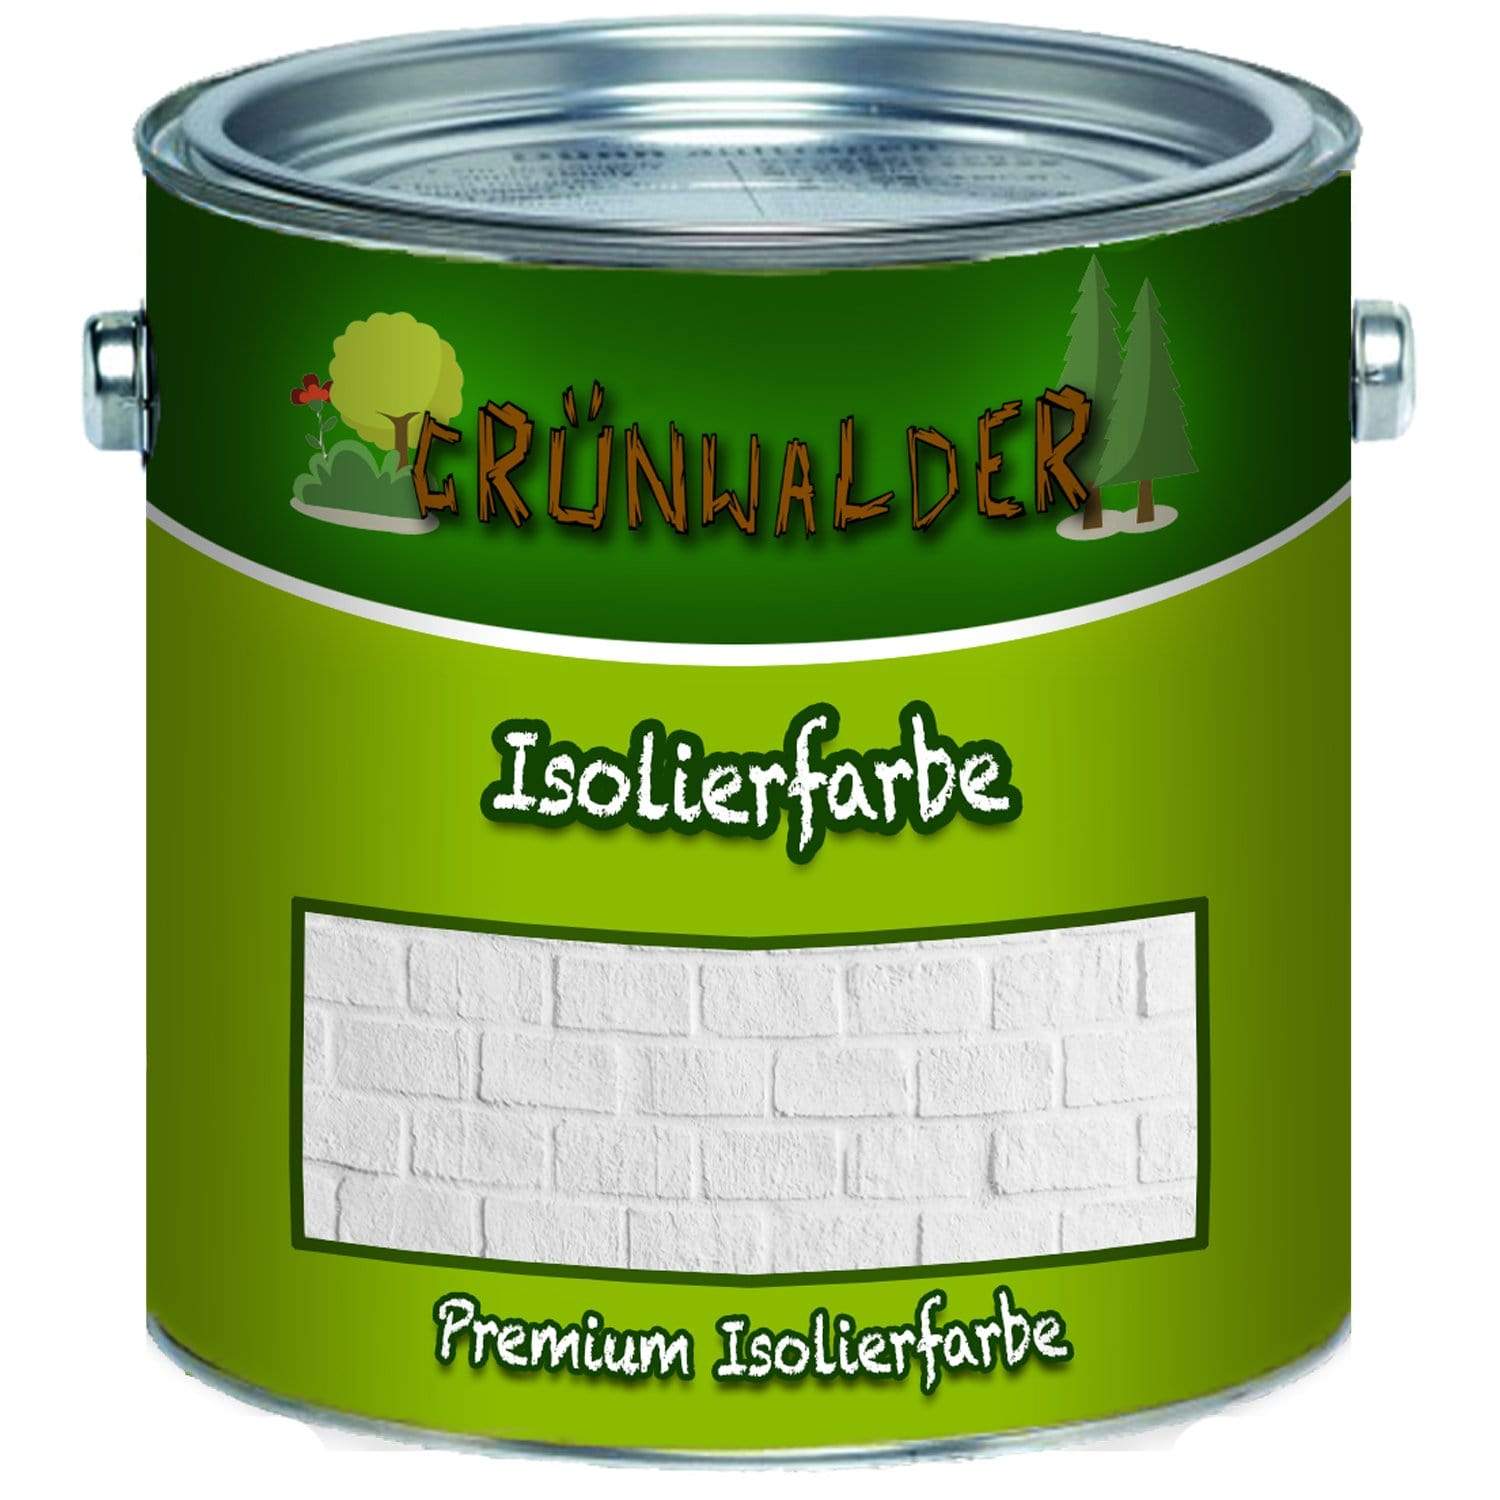 Grünwalder Isolierfarbe - Weiße Wandfarbe - FARBENLÖWE